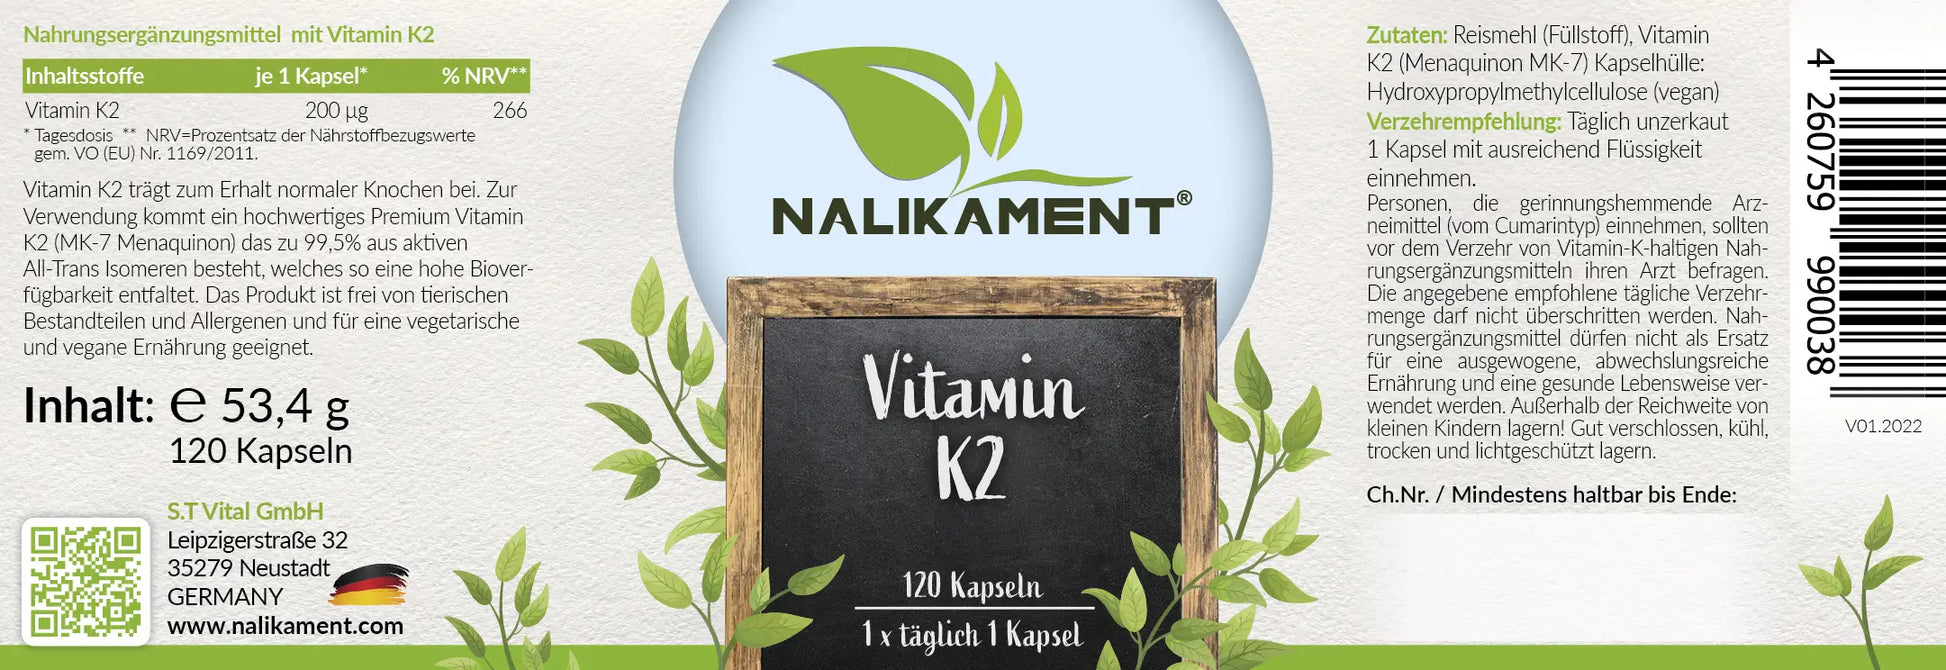 Dieses Nahrungsergänzungsmittel mit Vitamin K2 von Nalikament unterstützt die Gesundheit Ihrer Knochen und Ihres Herzens und verbessert die Calciumaufnahme, damit Sie sich gesund und fit fühlen können - und jede Menge weitere Vorteile!